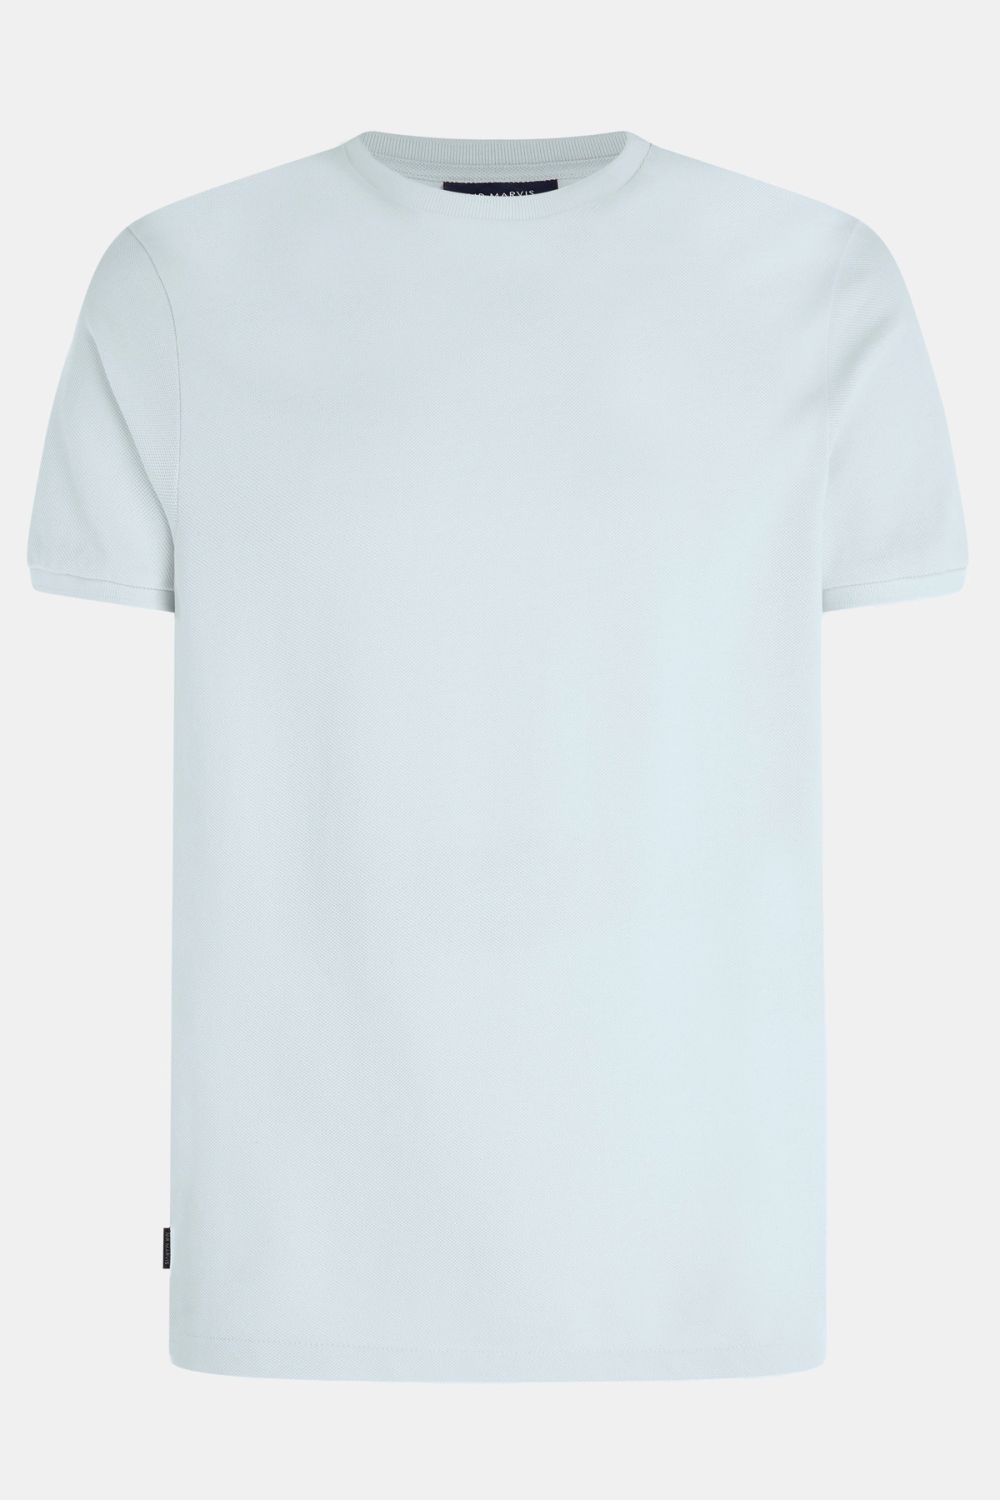 Avenues - T-shirt Piqué